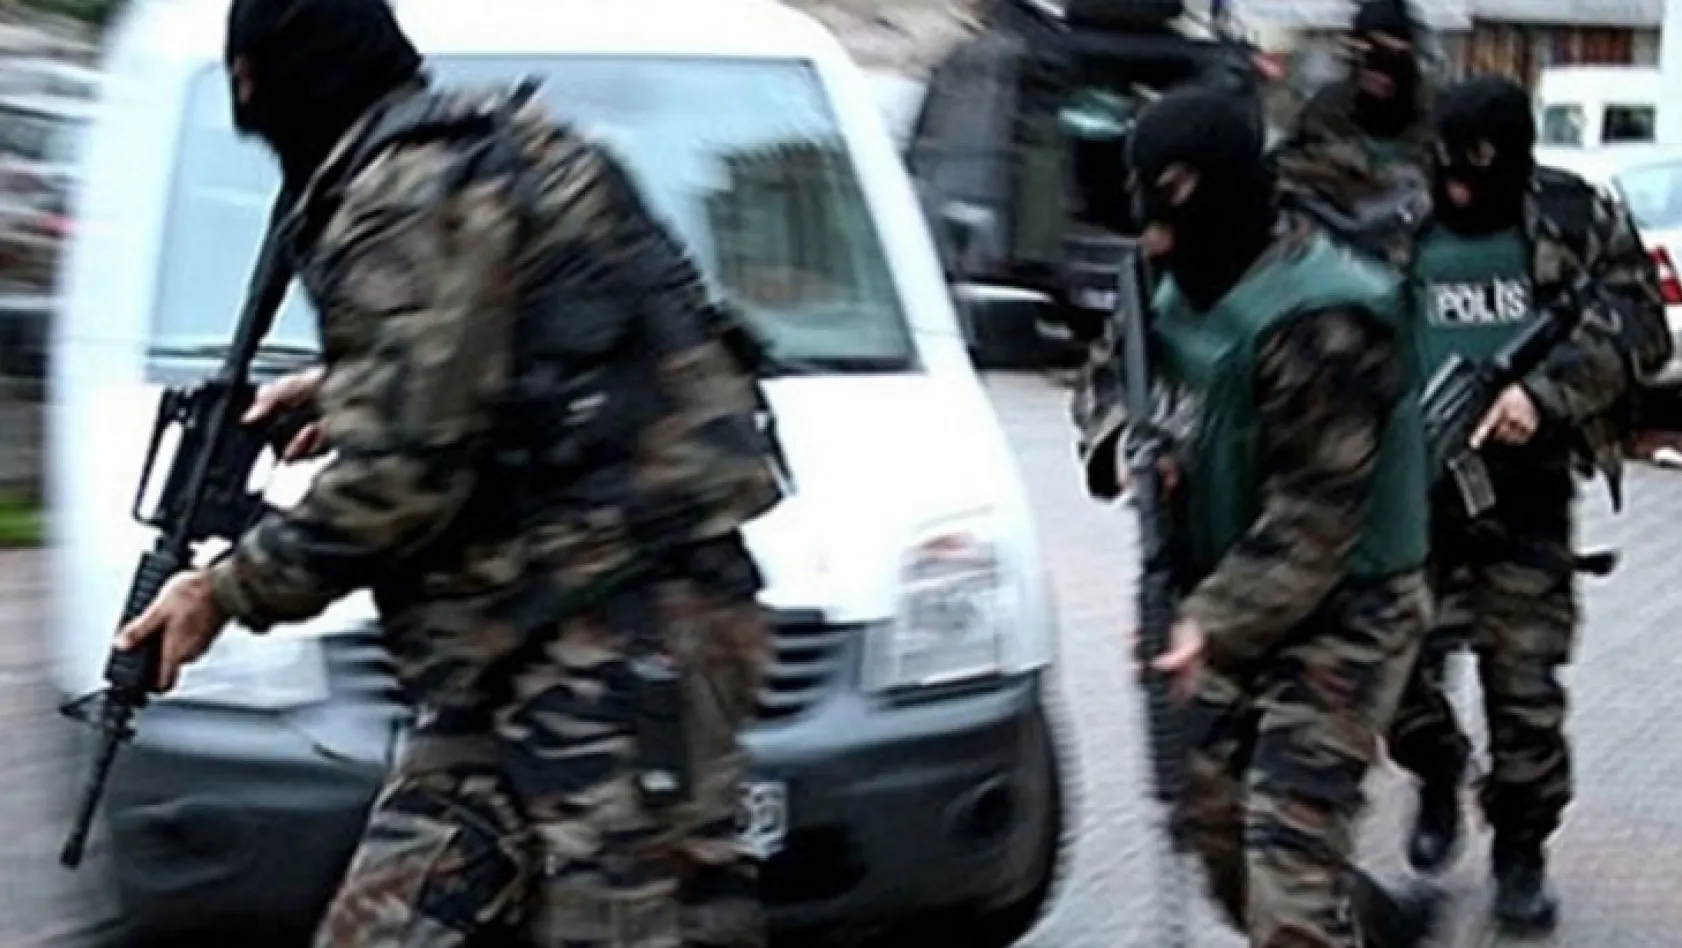 Bingöl'de terör operasyonunda 5 kişi tutuklandı